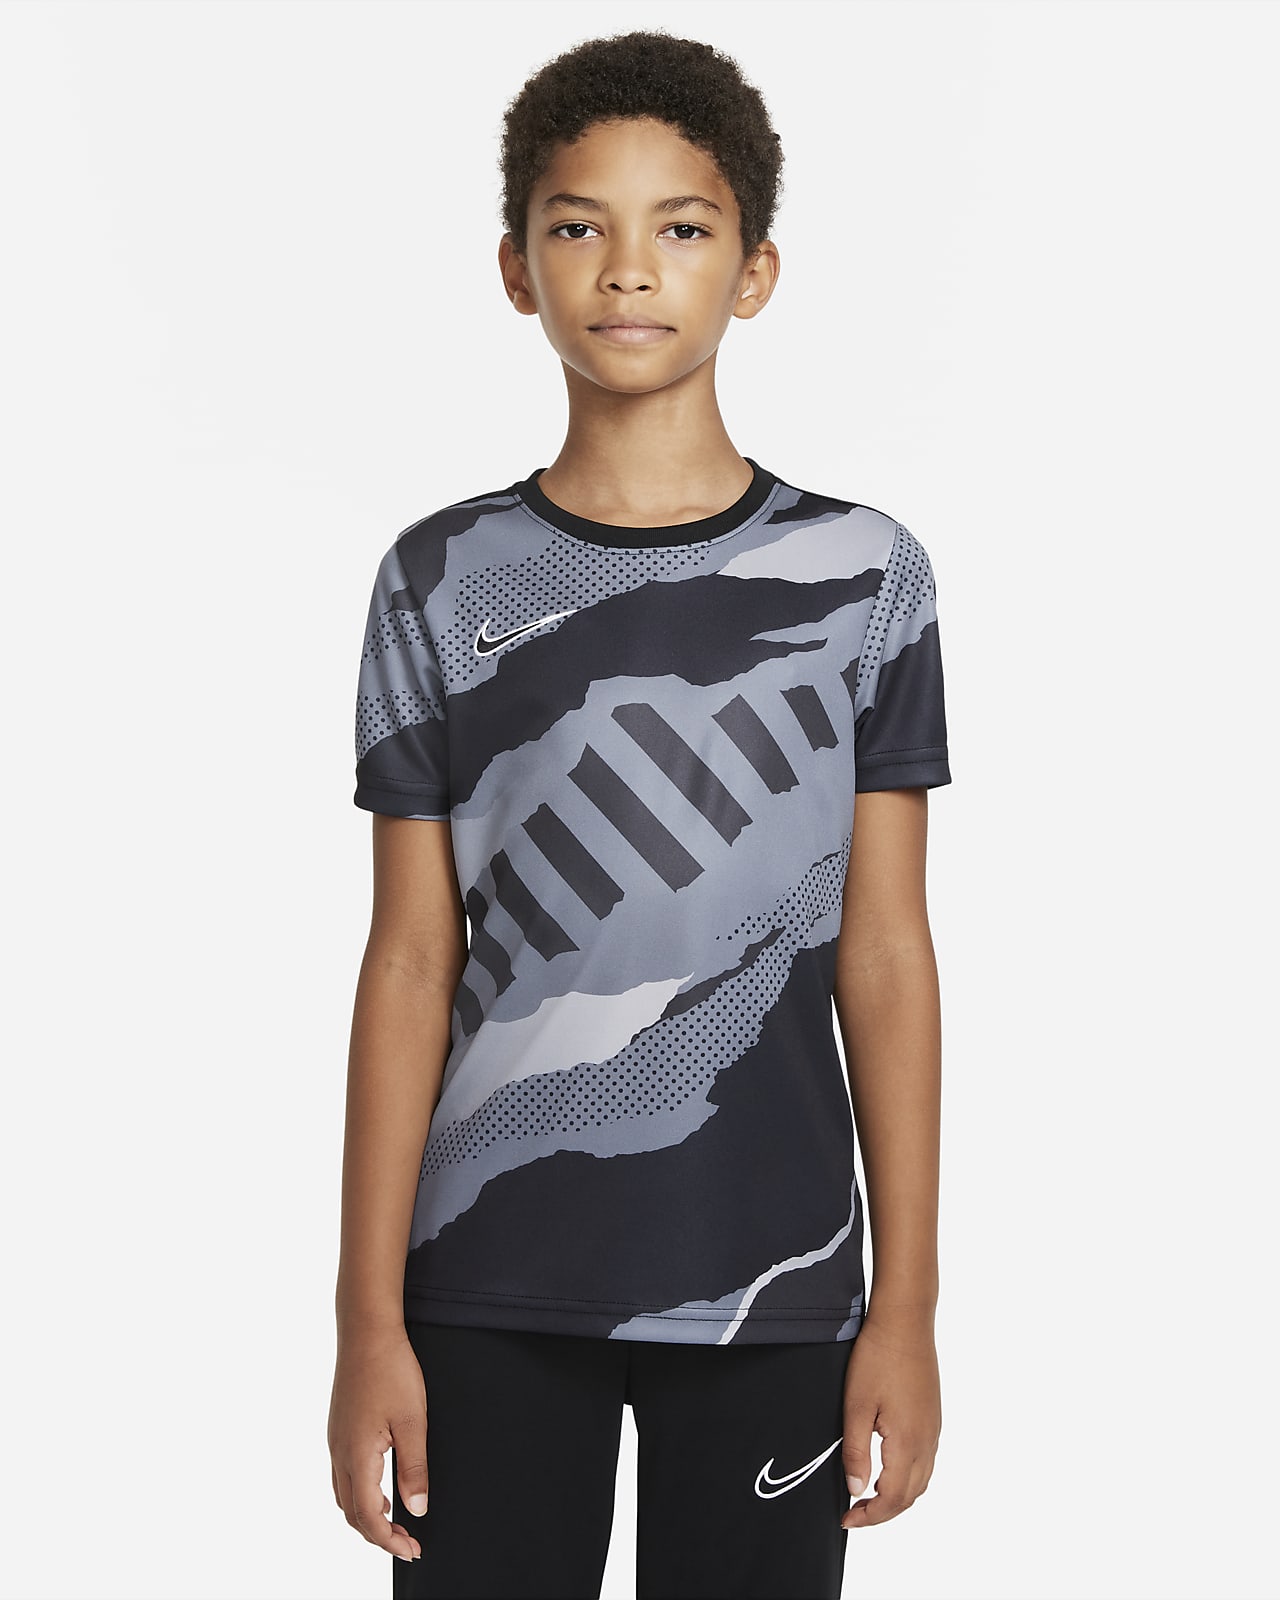 Κοντομάνικη ποδοσφαιρική μπλούζα Nike για μεγάλα παιδιά